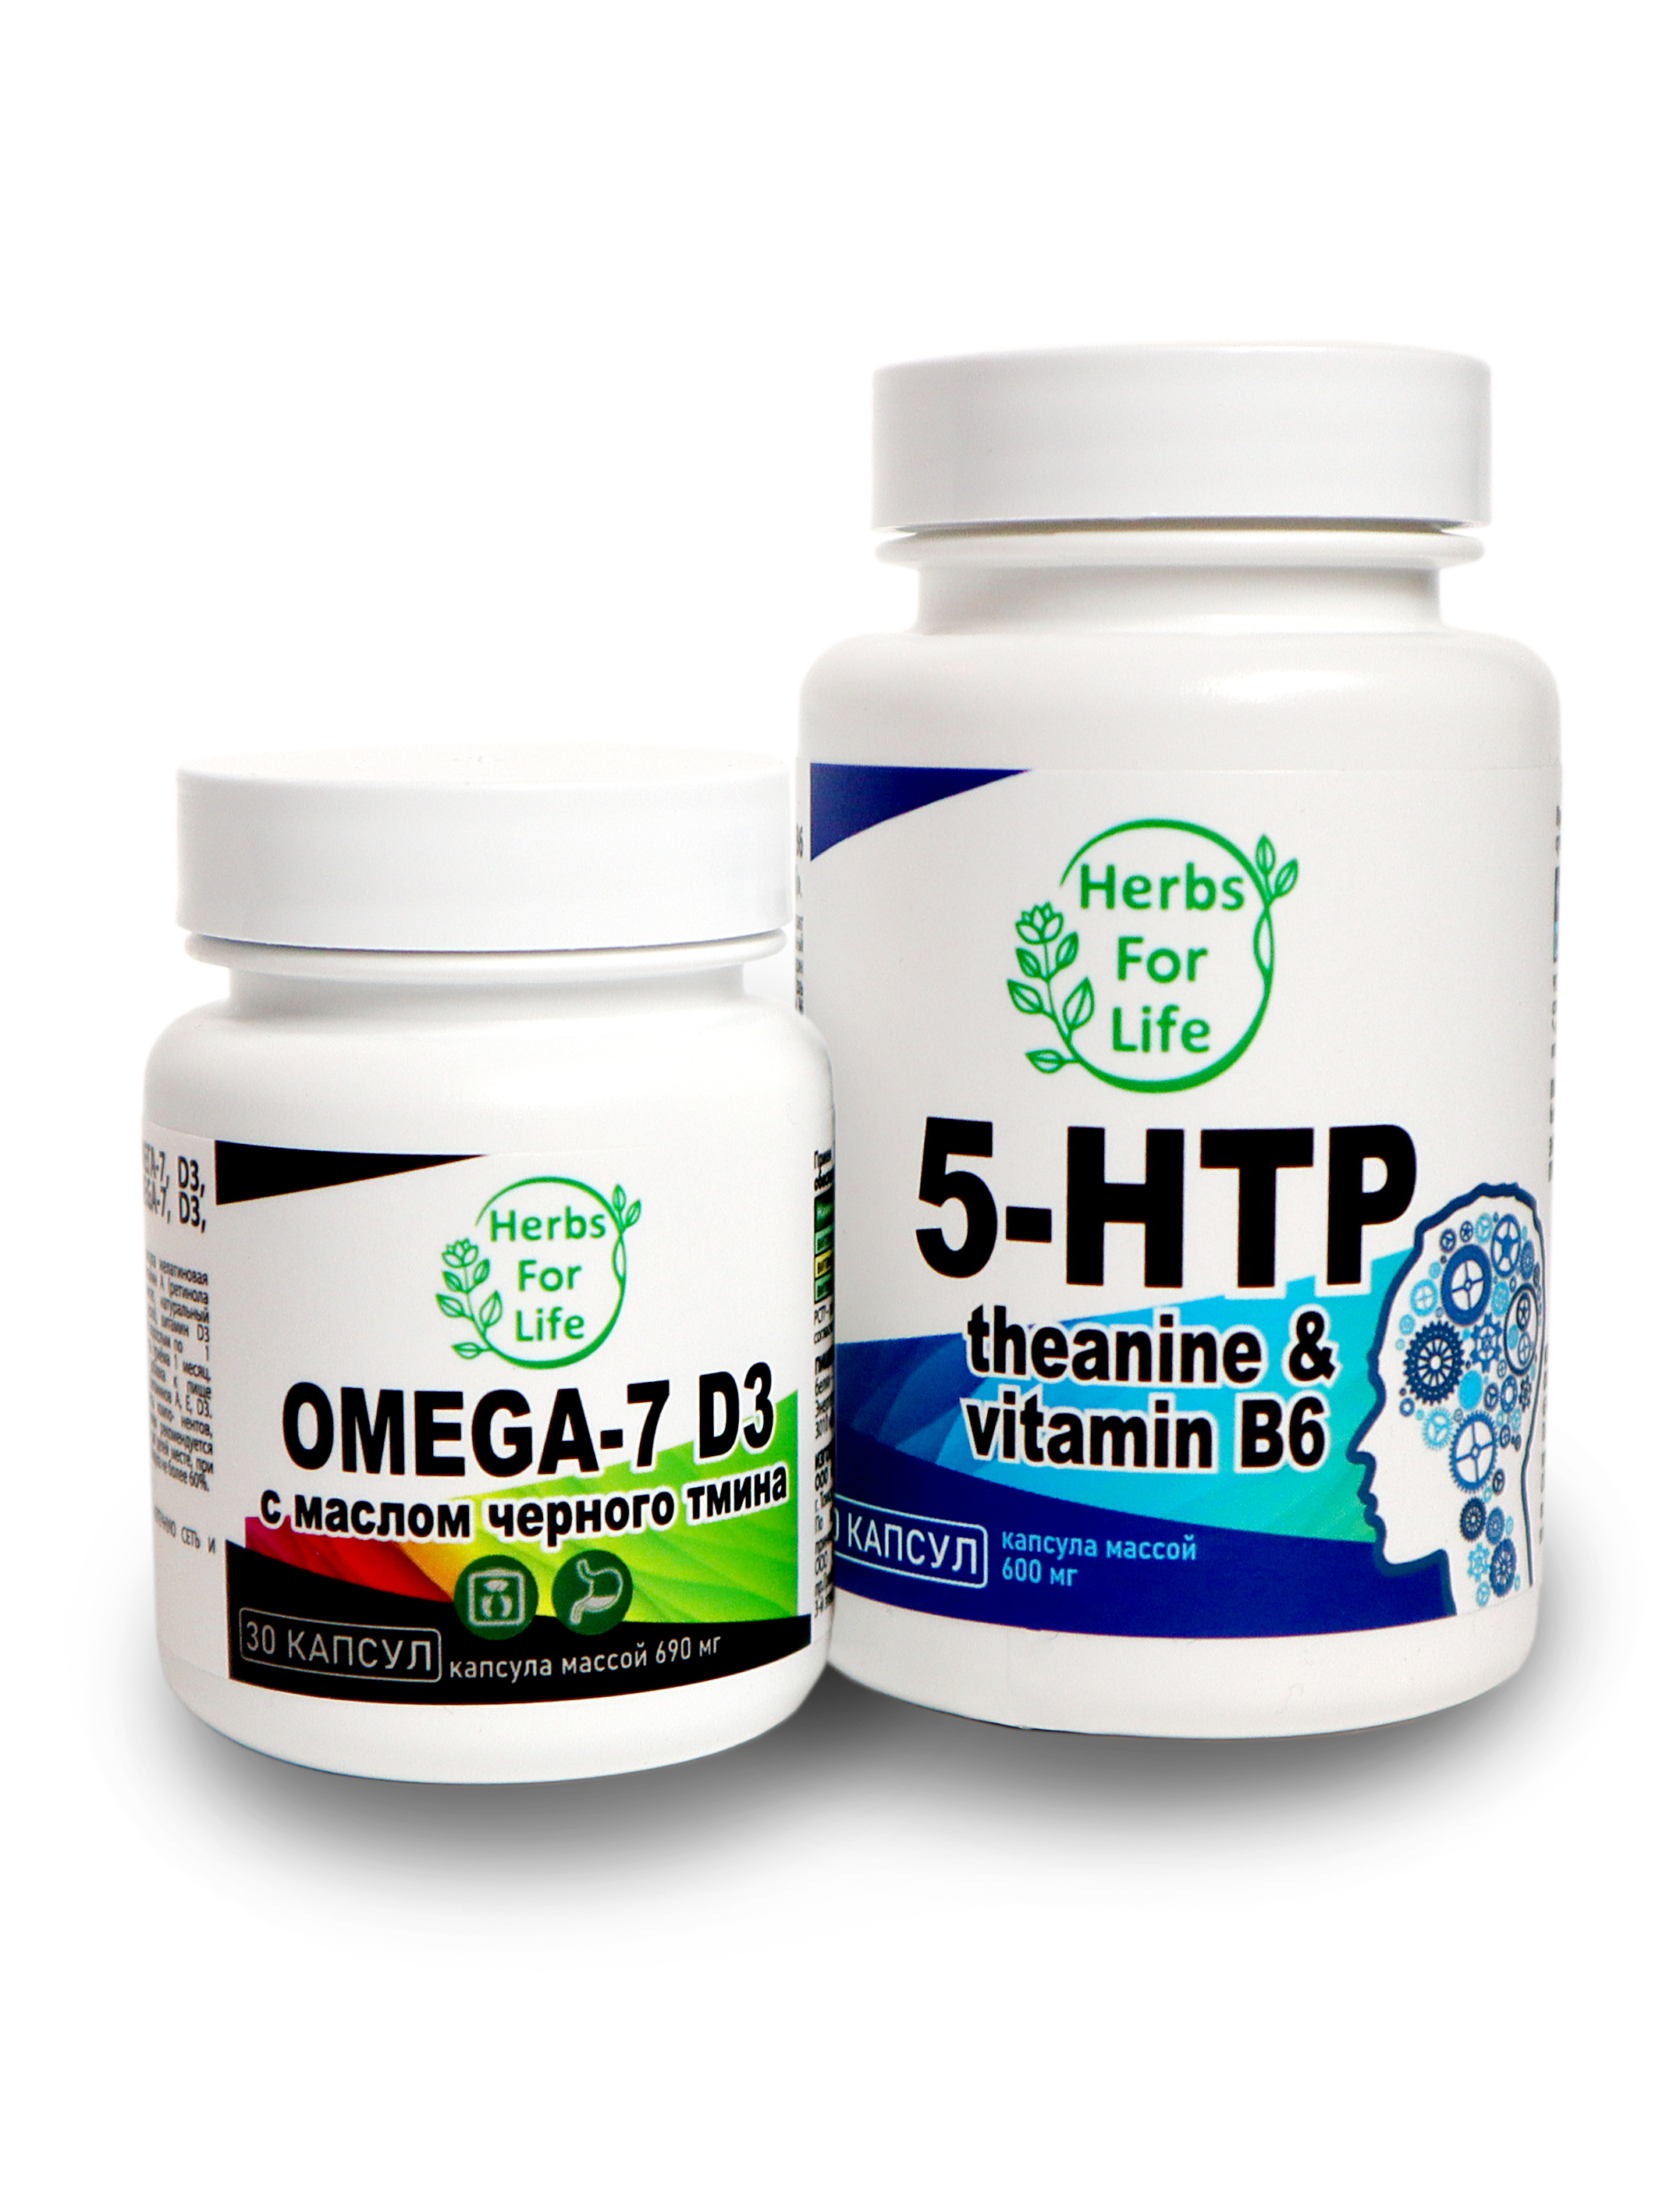 Купить Herbs For Life Omega-7 D3 Black Cumin капсулы 30 шт. + 5-HTP капсулы 30 шт.